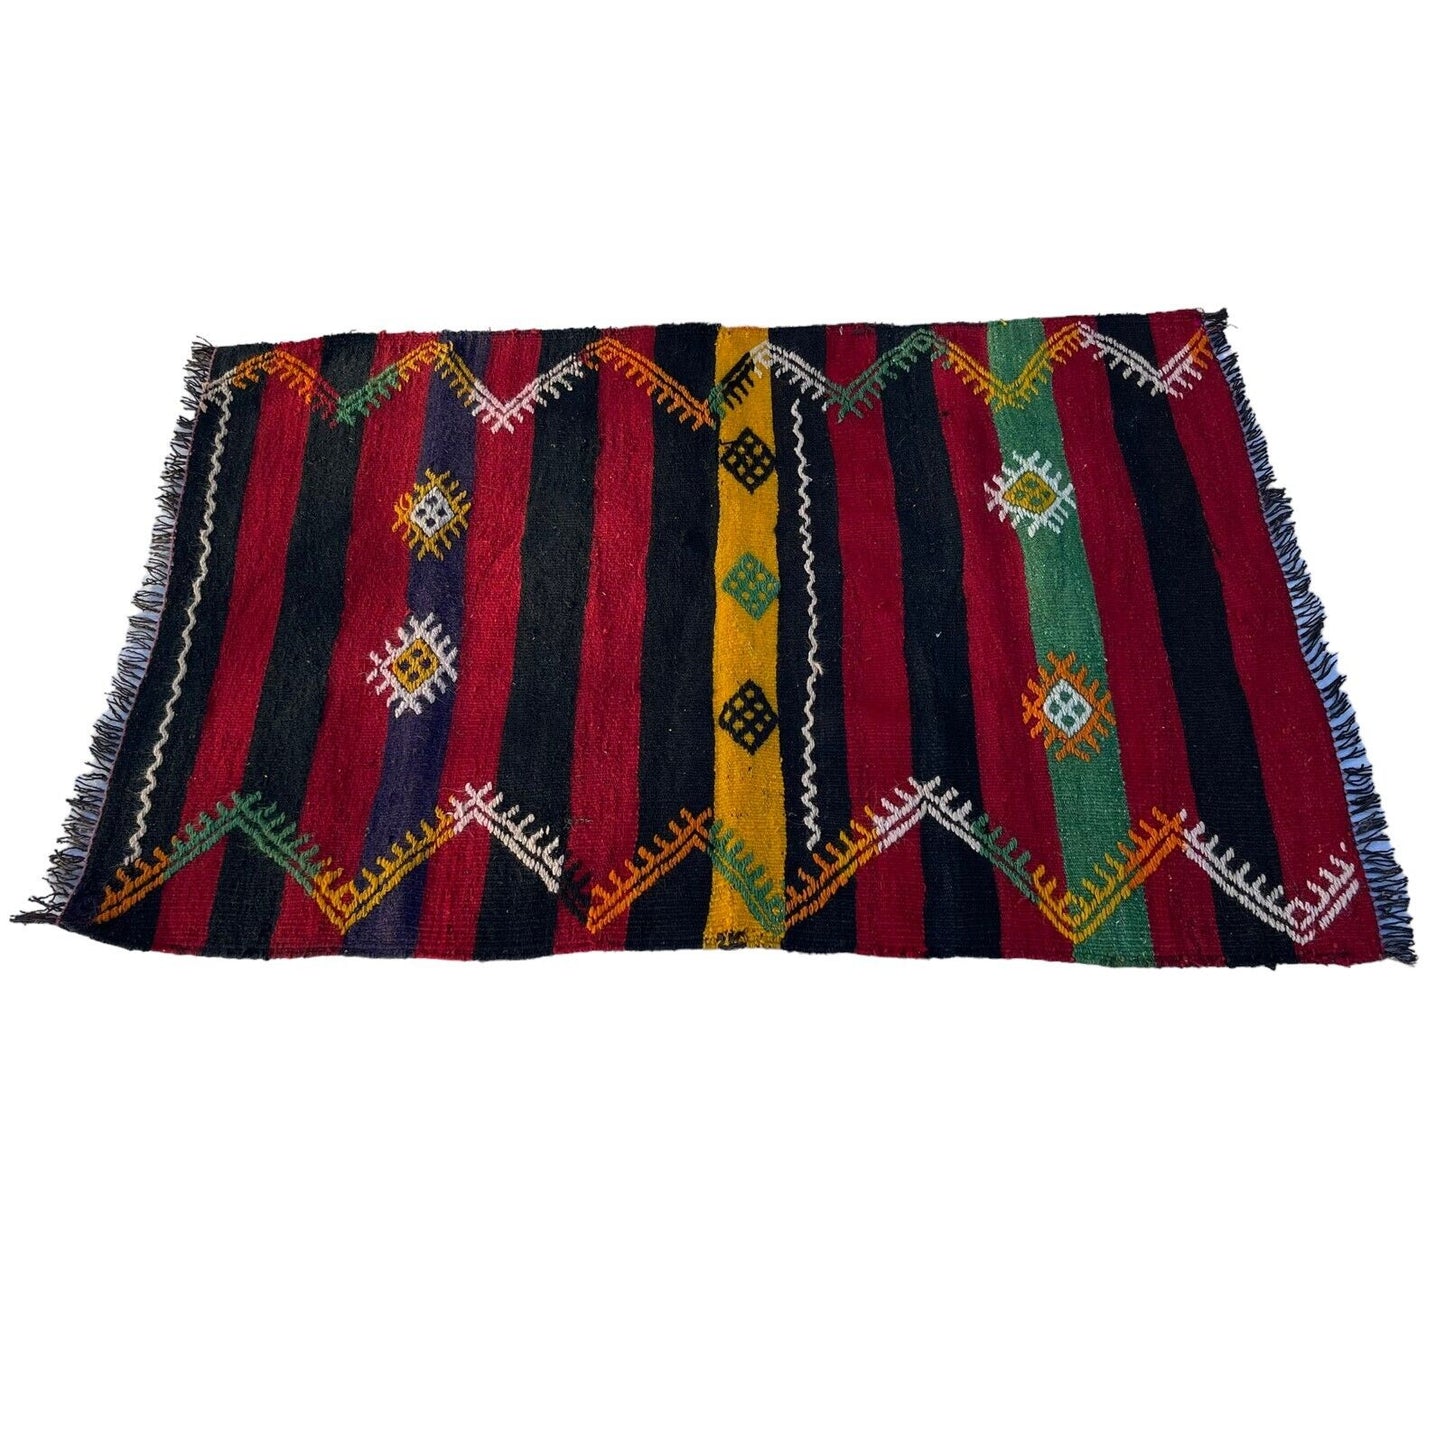 Traditional Turkish Kilim Rug,Vintage Kelim Teppich 137x100 Cm